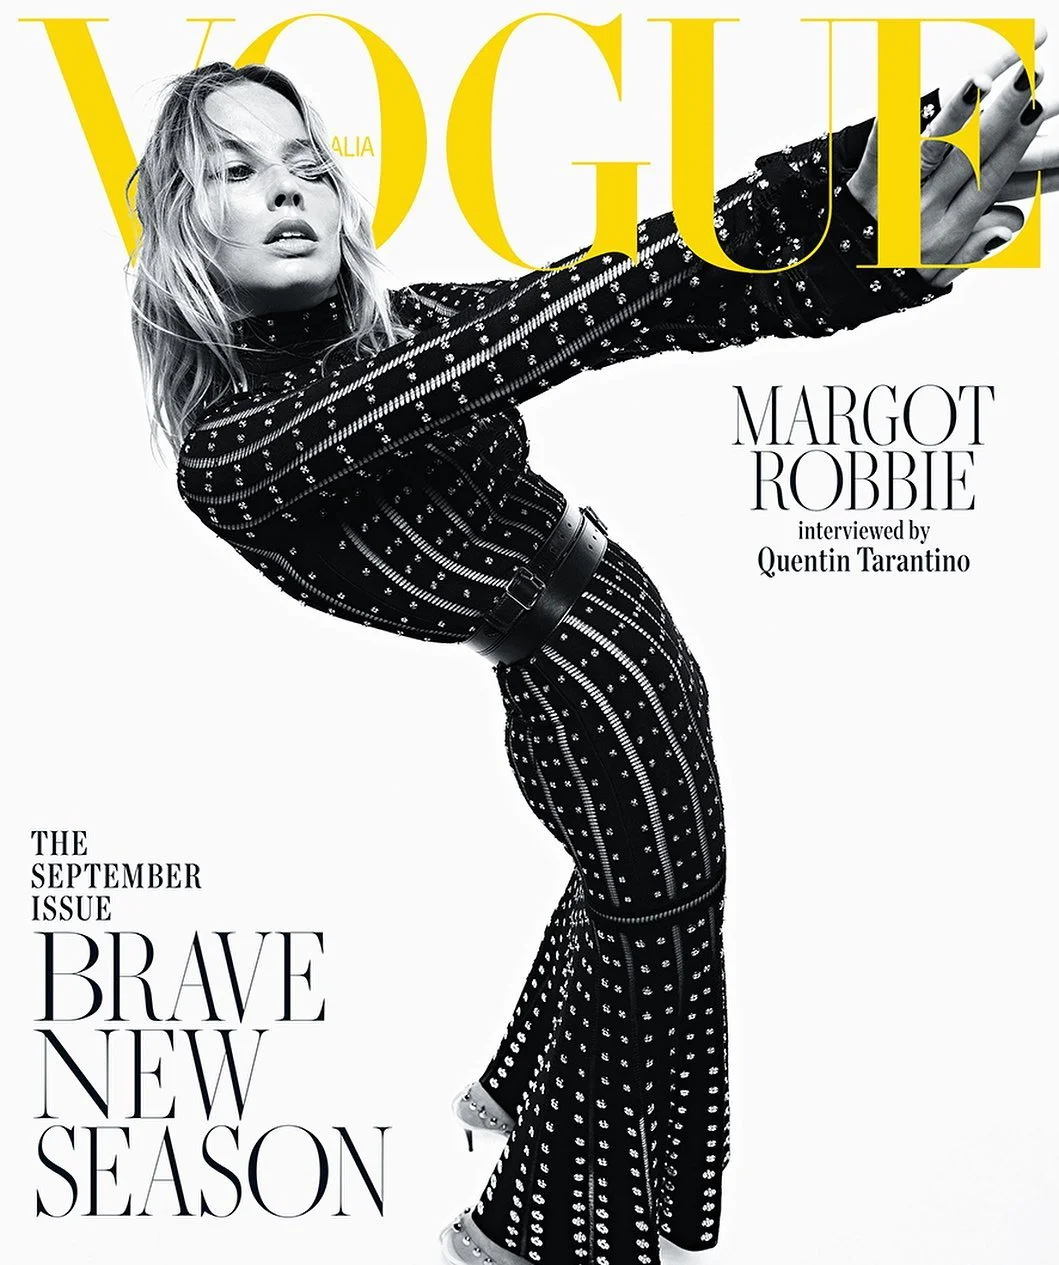 Марго Робби украсила обложку Vogue, но фанов напугал ее худощавый вид - фото 446829